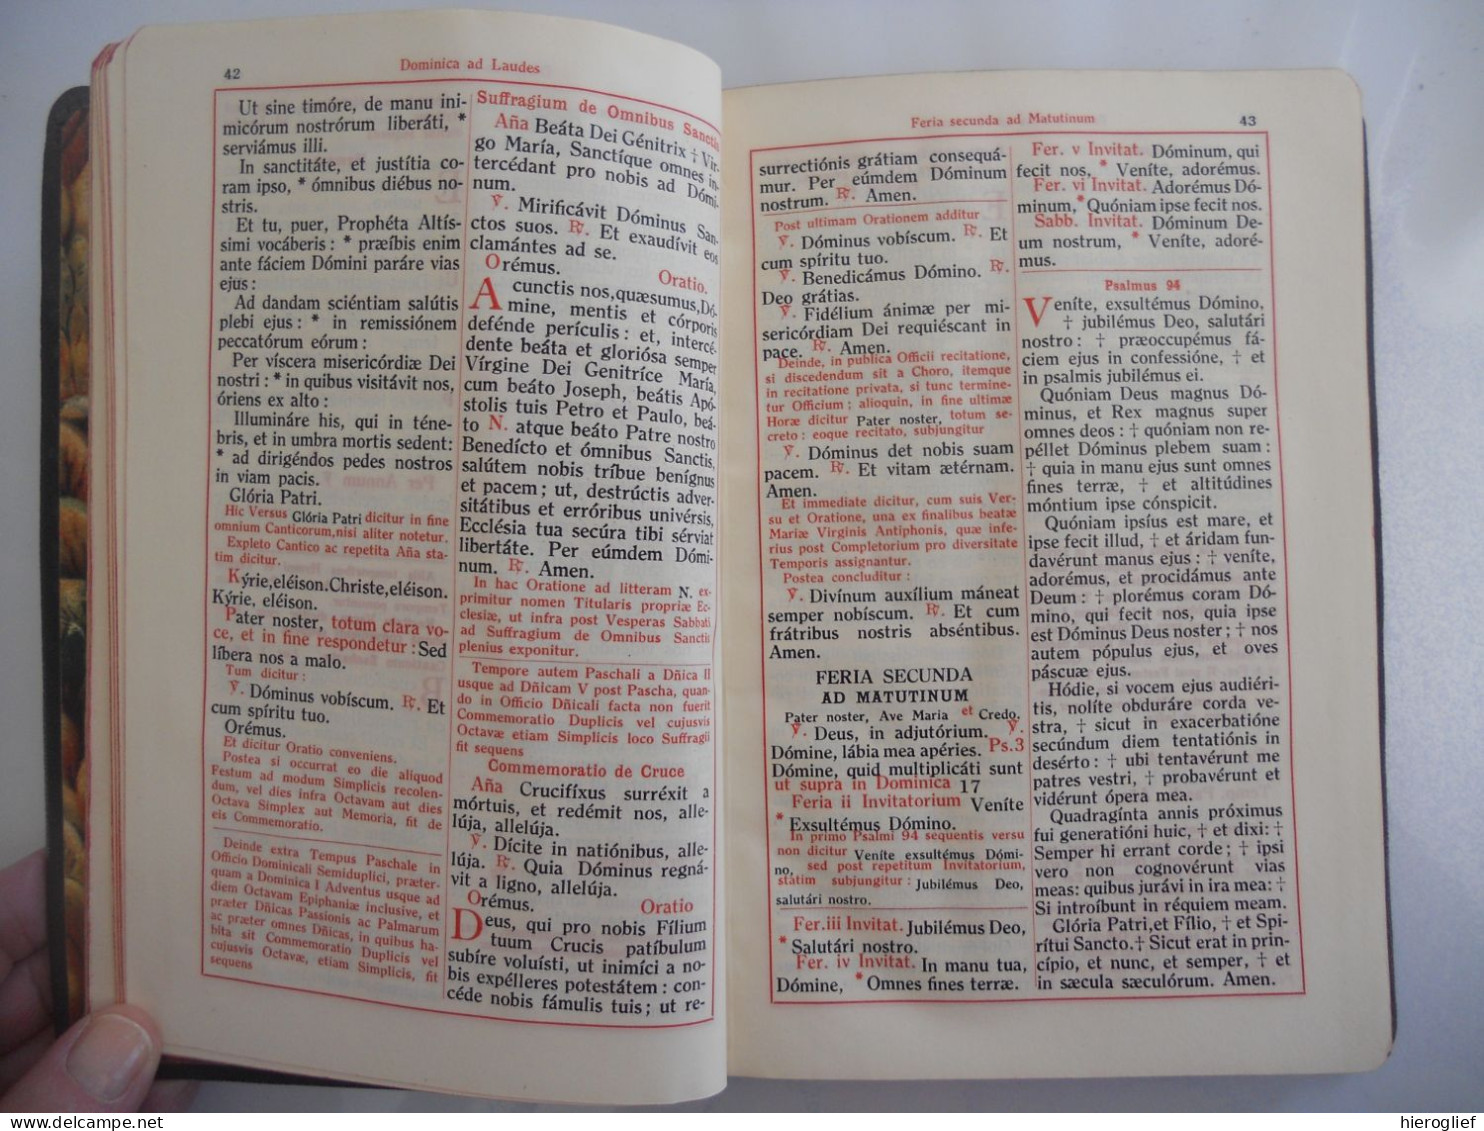 PSALTERIUM Dispositum Per Hebdomadam Secundum Regulam SS.PATRIS NOSTRI BENEDICTI - Breviarium Monasticum 1925 Brugge - Bijbel, Christendom